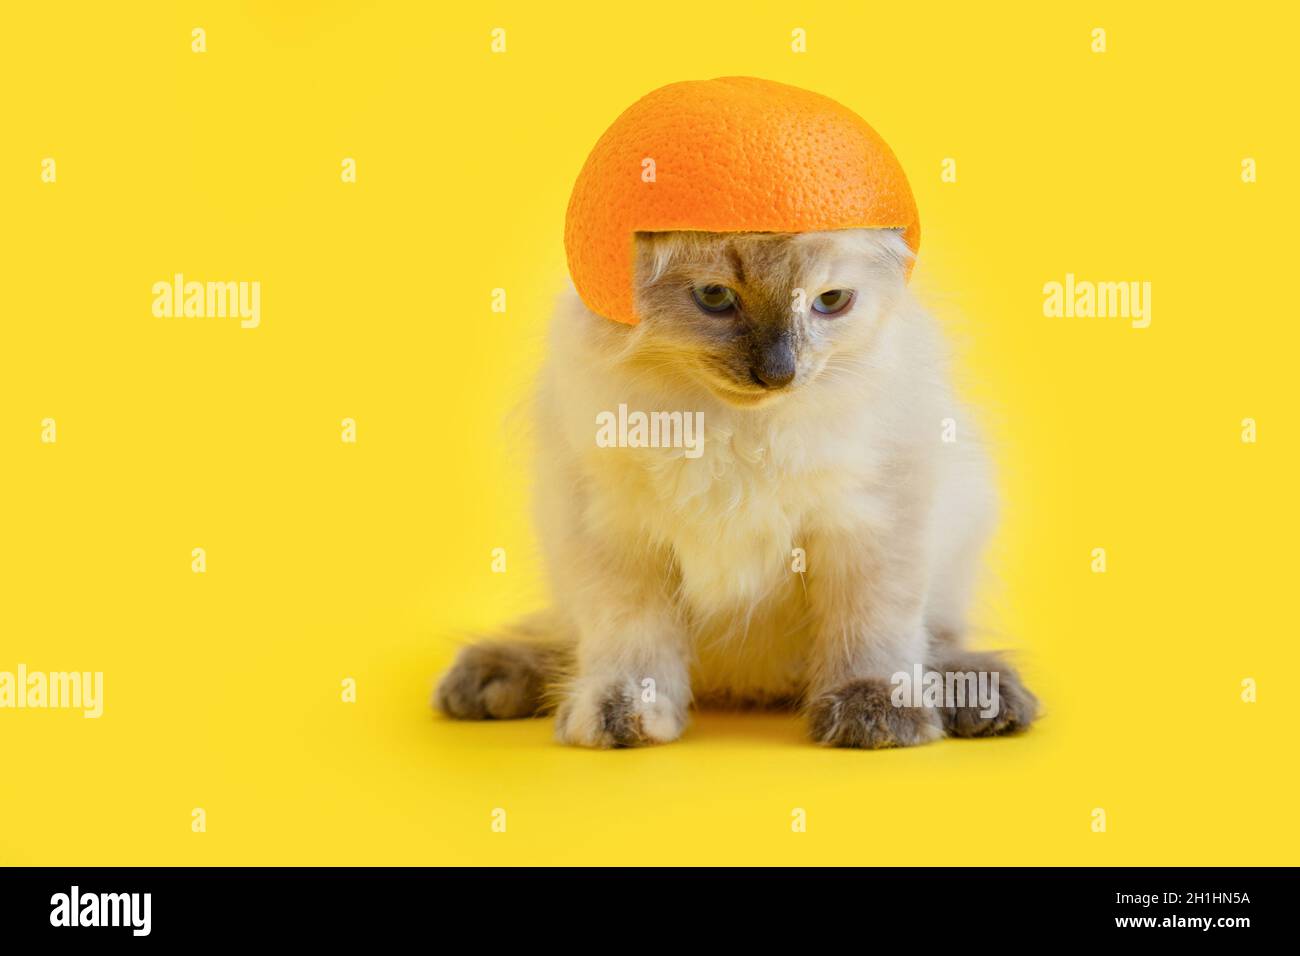 Flauschige Kätzchen weiße Katze im Helm aus Orange isoliert auf gelbem  Hintergrund mit Kopierraum. Kreatives Konzept lustig Domestic Katze  Haustier Tier Stockfotografie - Alamy